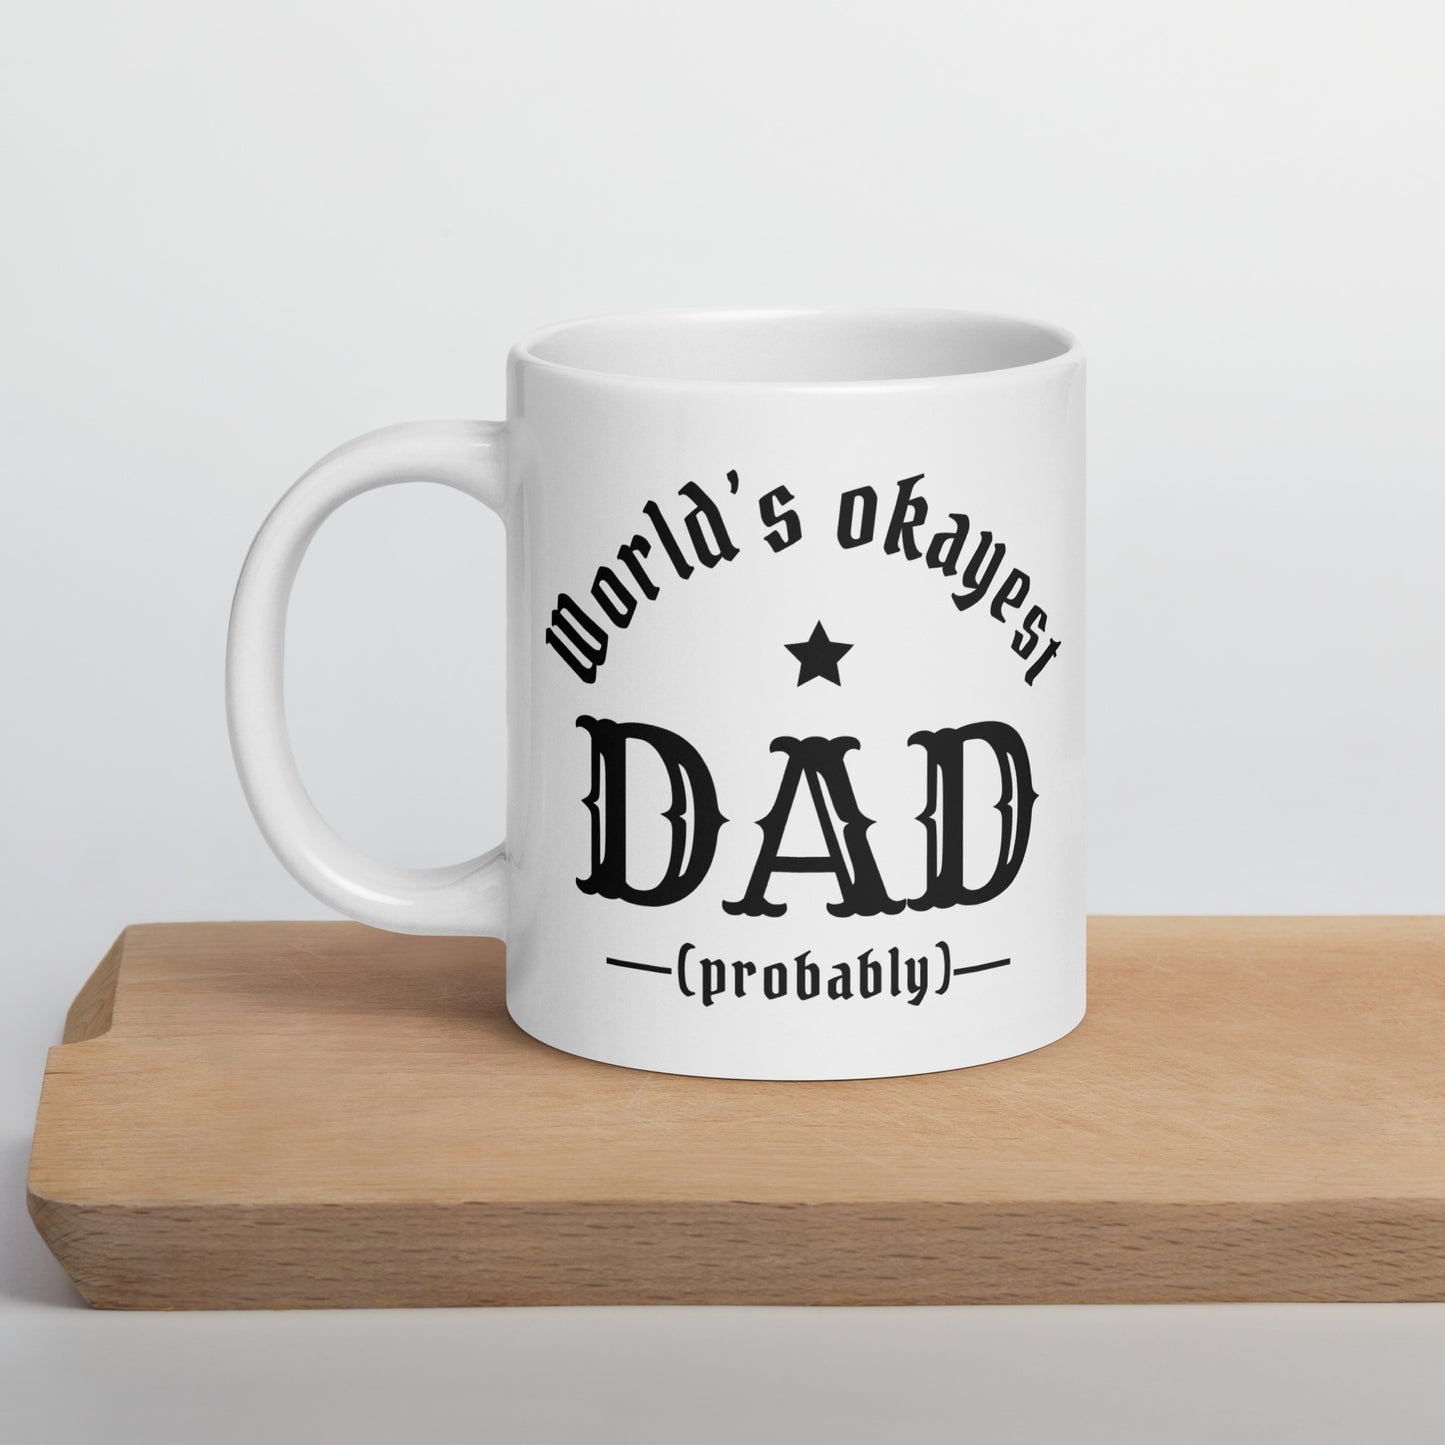 World's Okayest Dad! (probably) White glossy mug